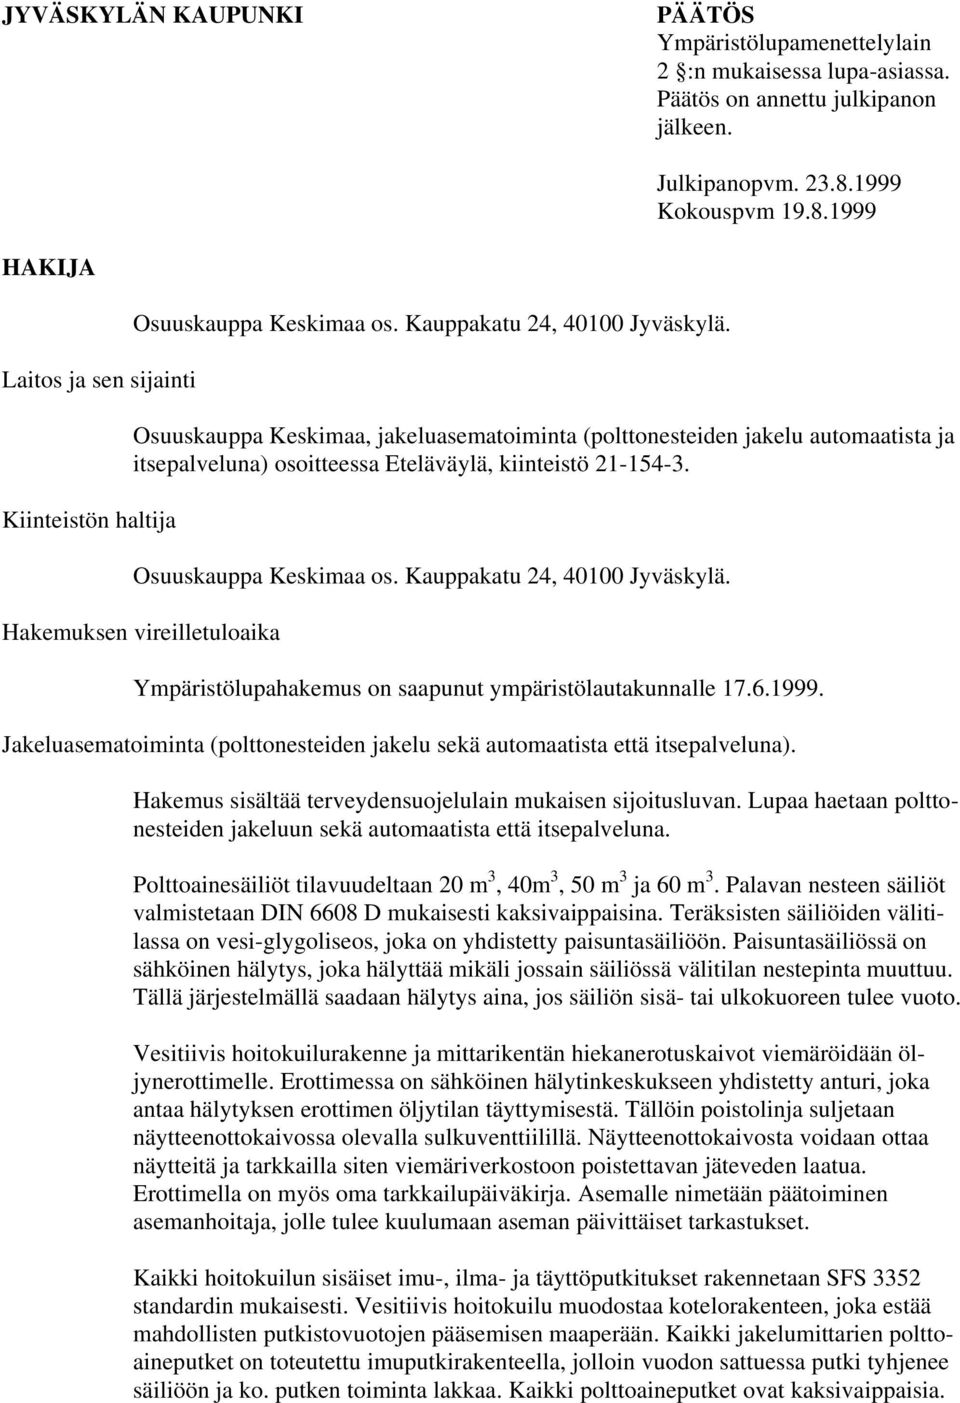 Osuuskauppa Keskimaa, jakeluasematoiminta (polttonesteiden jakelu automaatista ja itsepalveluna) osoitteessa Eteläväylä, kiinteistö 21-154-3. Osuuskauppa Keskimaa os. Kauppakatu 24, 40100 Jyväskylä.